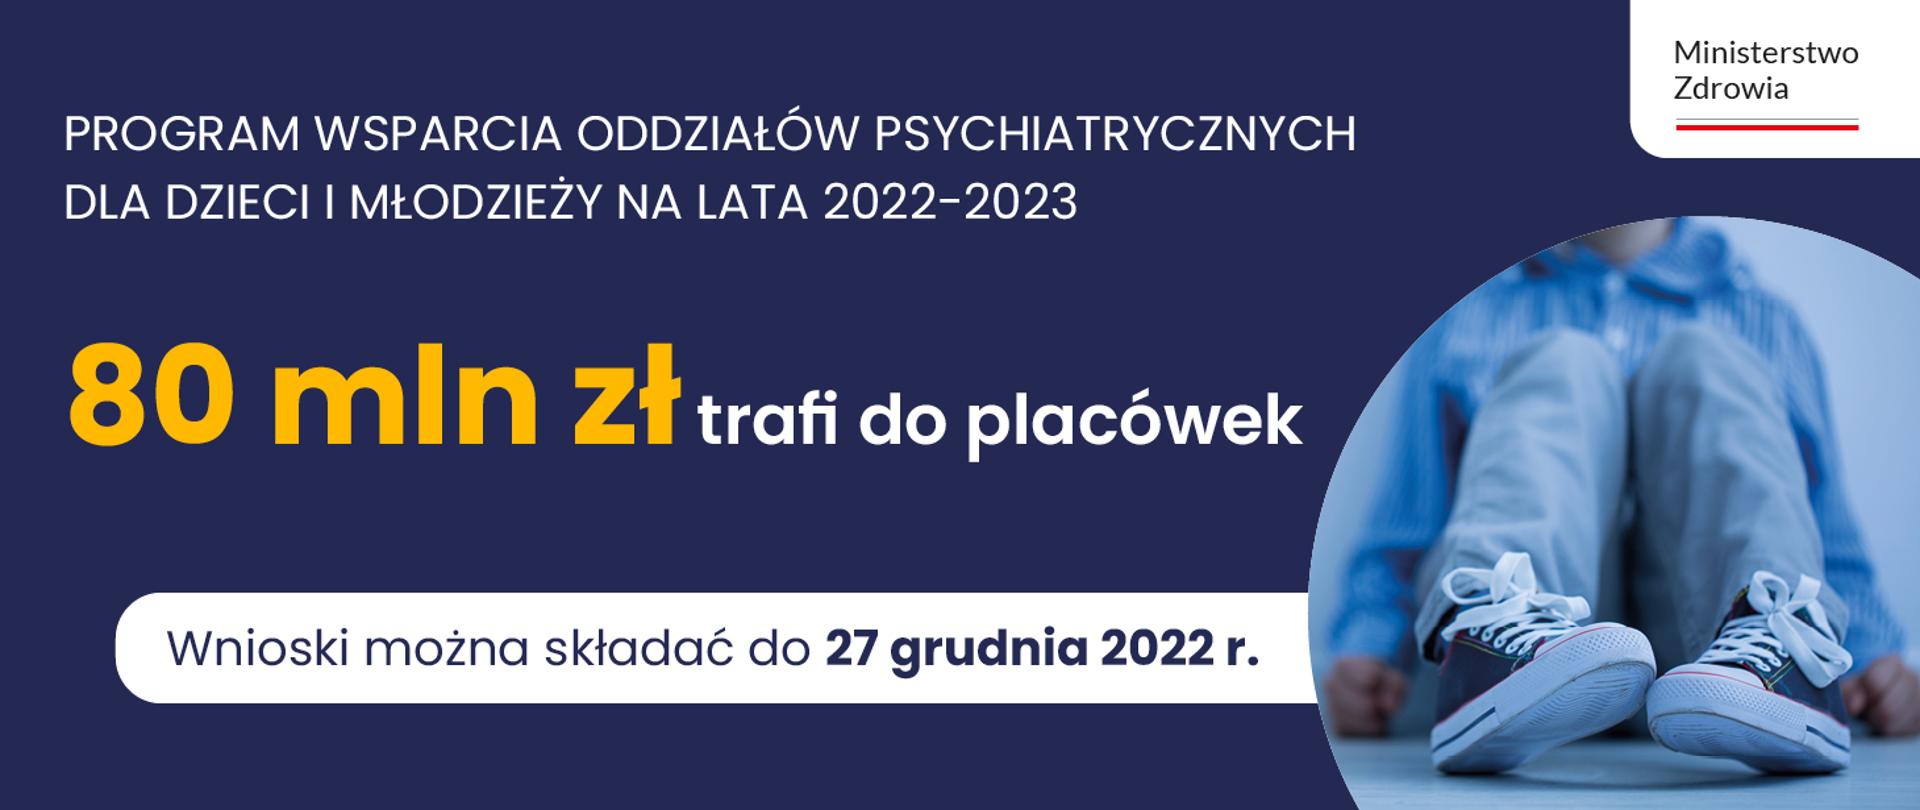 Programu wsparcia oddziałów psychiatrycznych dla dzieci i młodzieży na lata 2022-2023